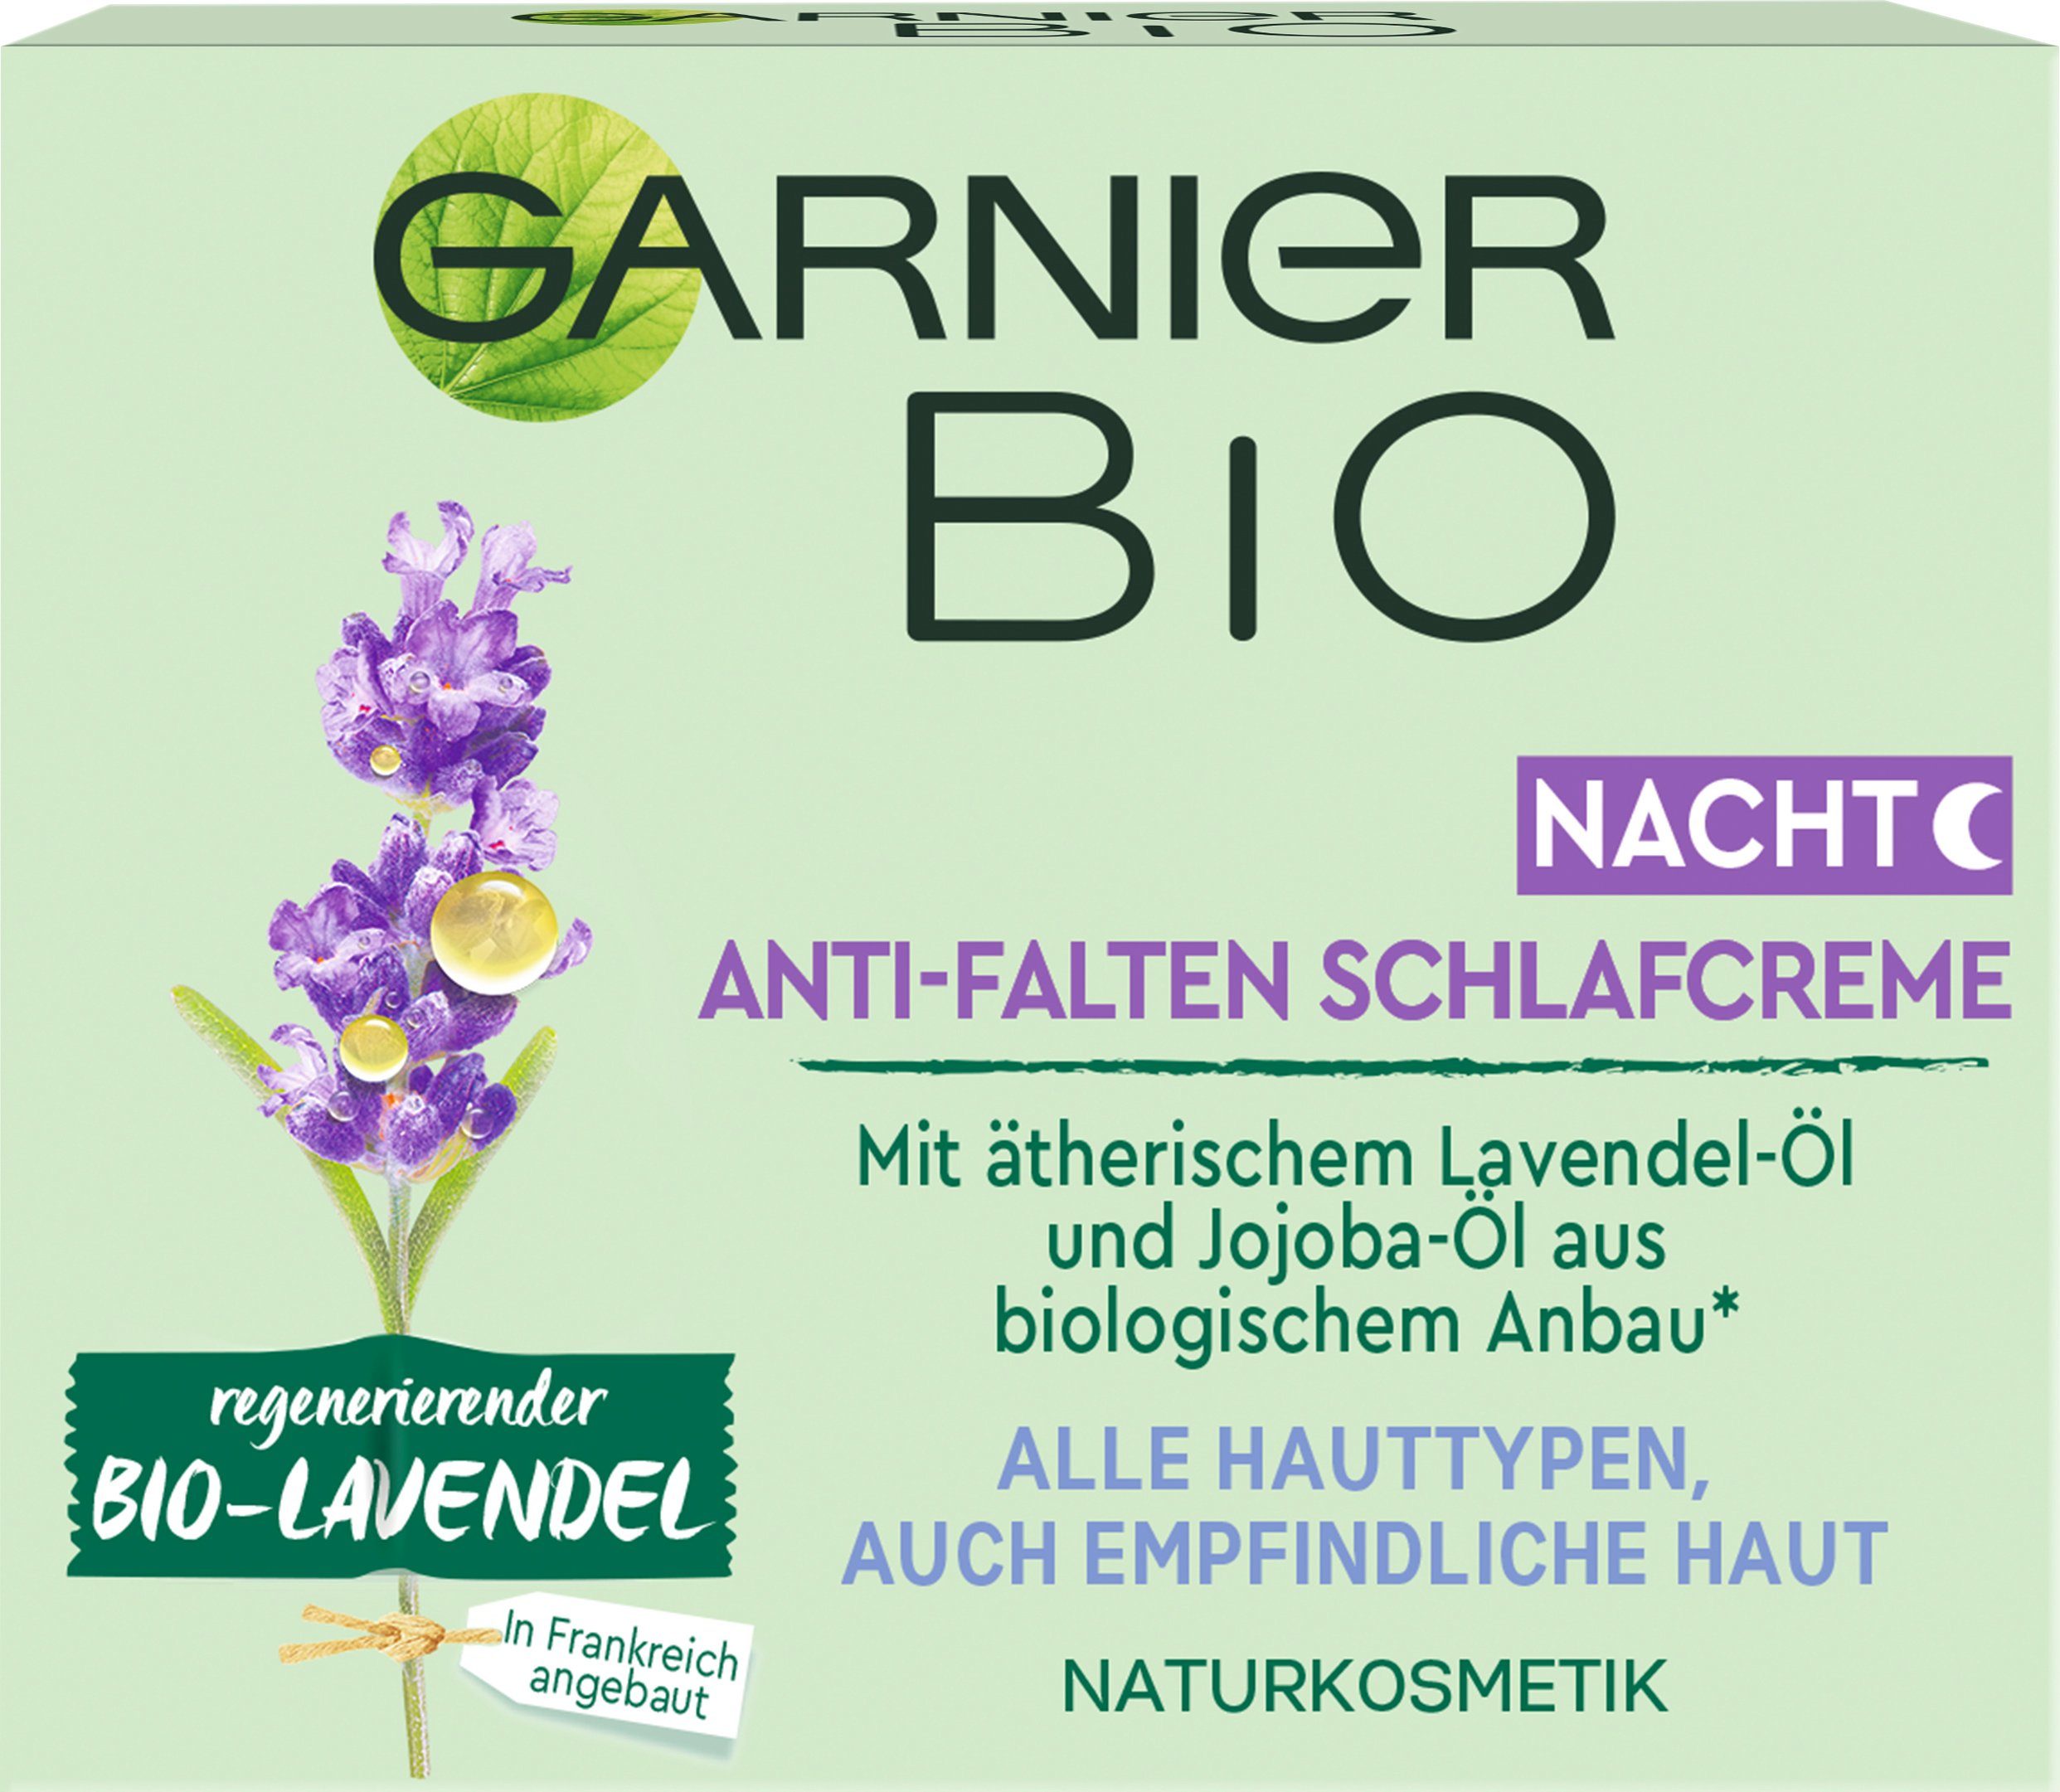 Bio-Lavendel Schlafcreme Anti-Falten Nachtcreme GARNIER regenerierender